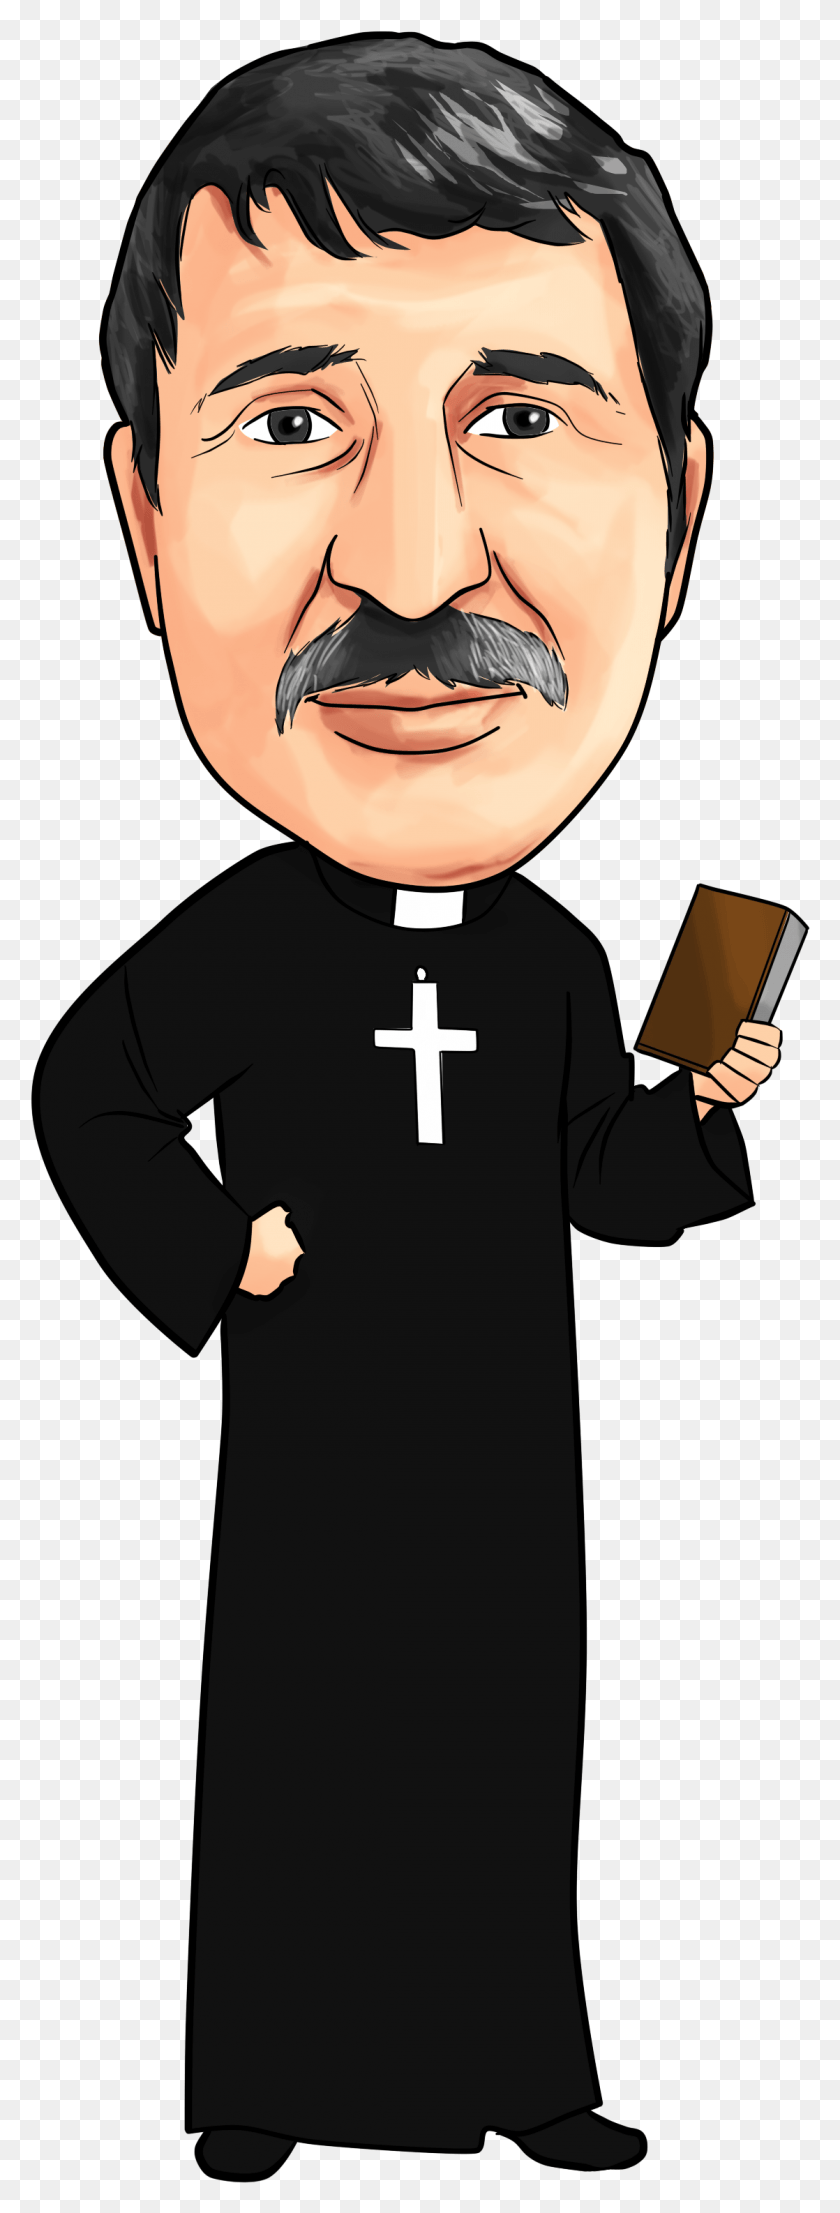 1118x3087 Священник Карикатура Карикатура На Священника, Человек, Человек, Епископ Hd Png Скачать